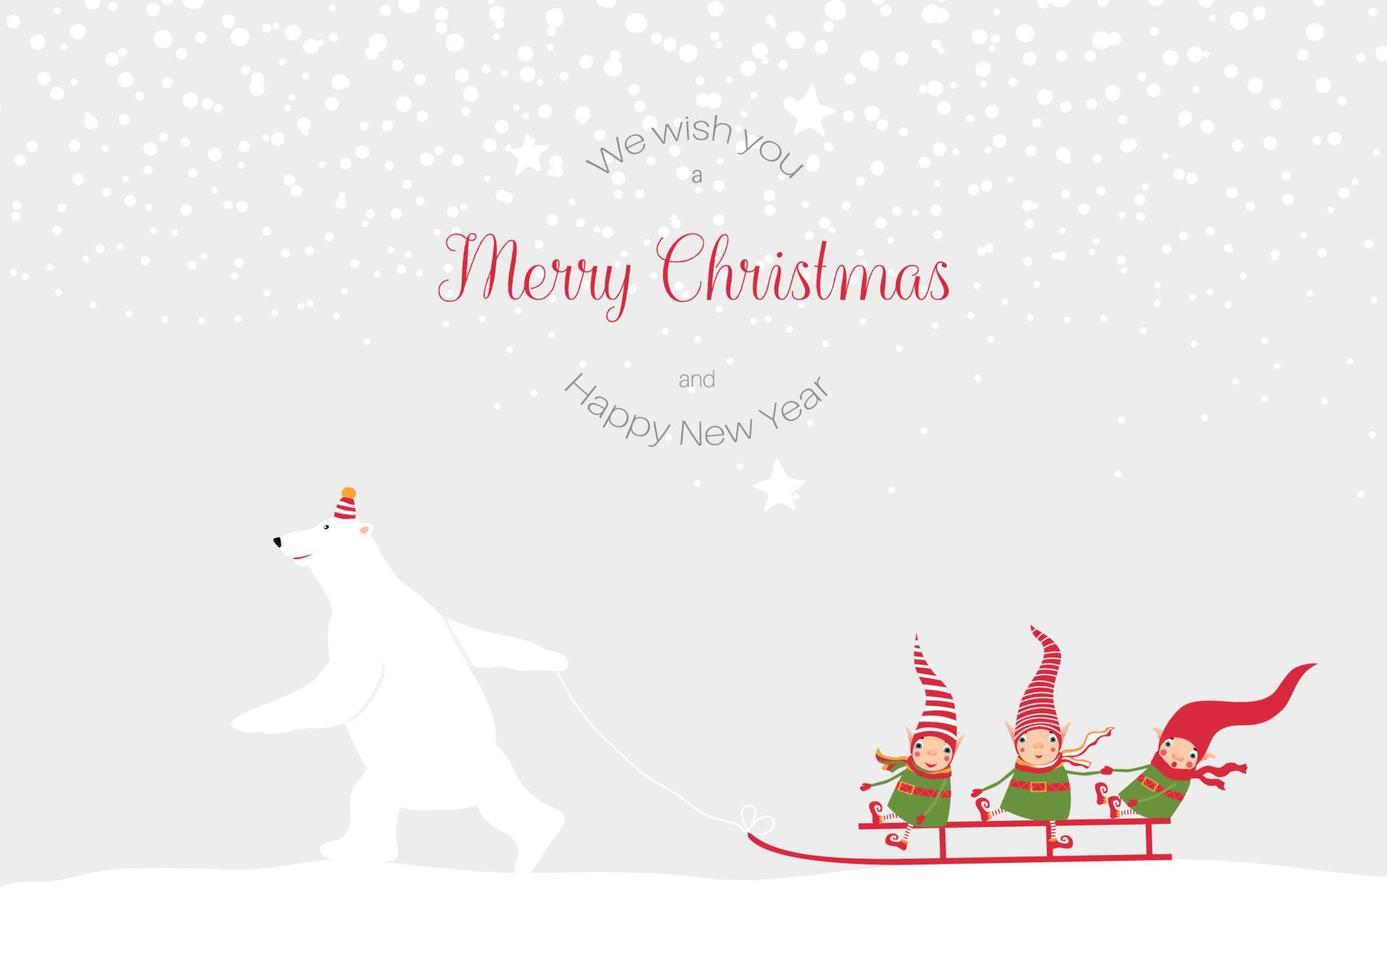 valores vector ilustración con invierno paisaje. polar oso trineo 3 linda Navidad elfos nuevo año nevada. modelo para alegre Navidad y nuevo año tarjetas, saludos, pancartas o carteles